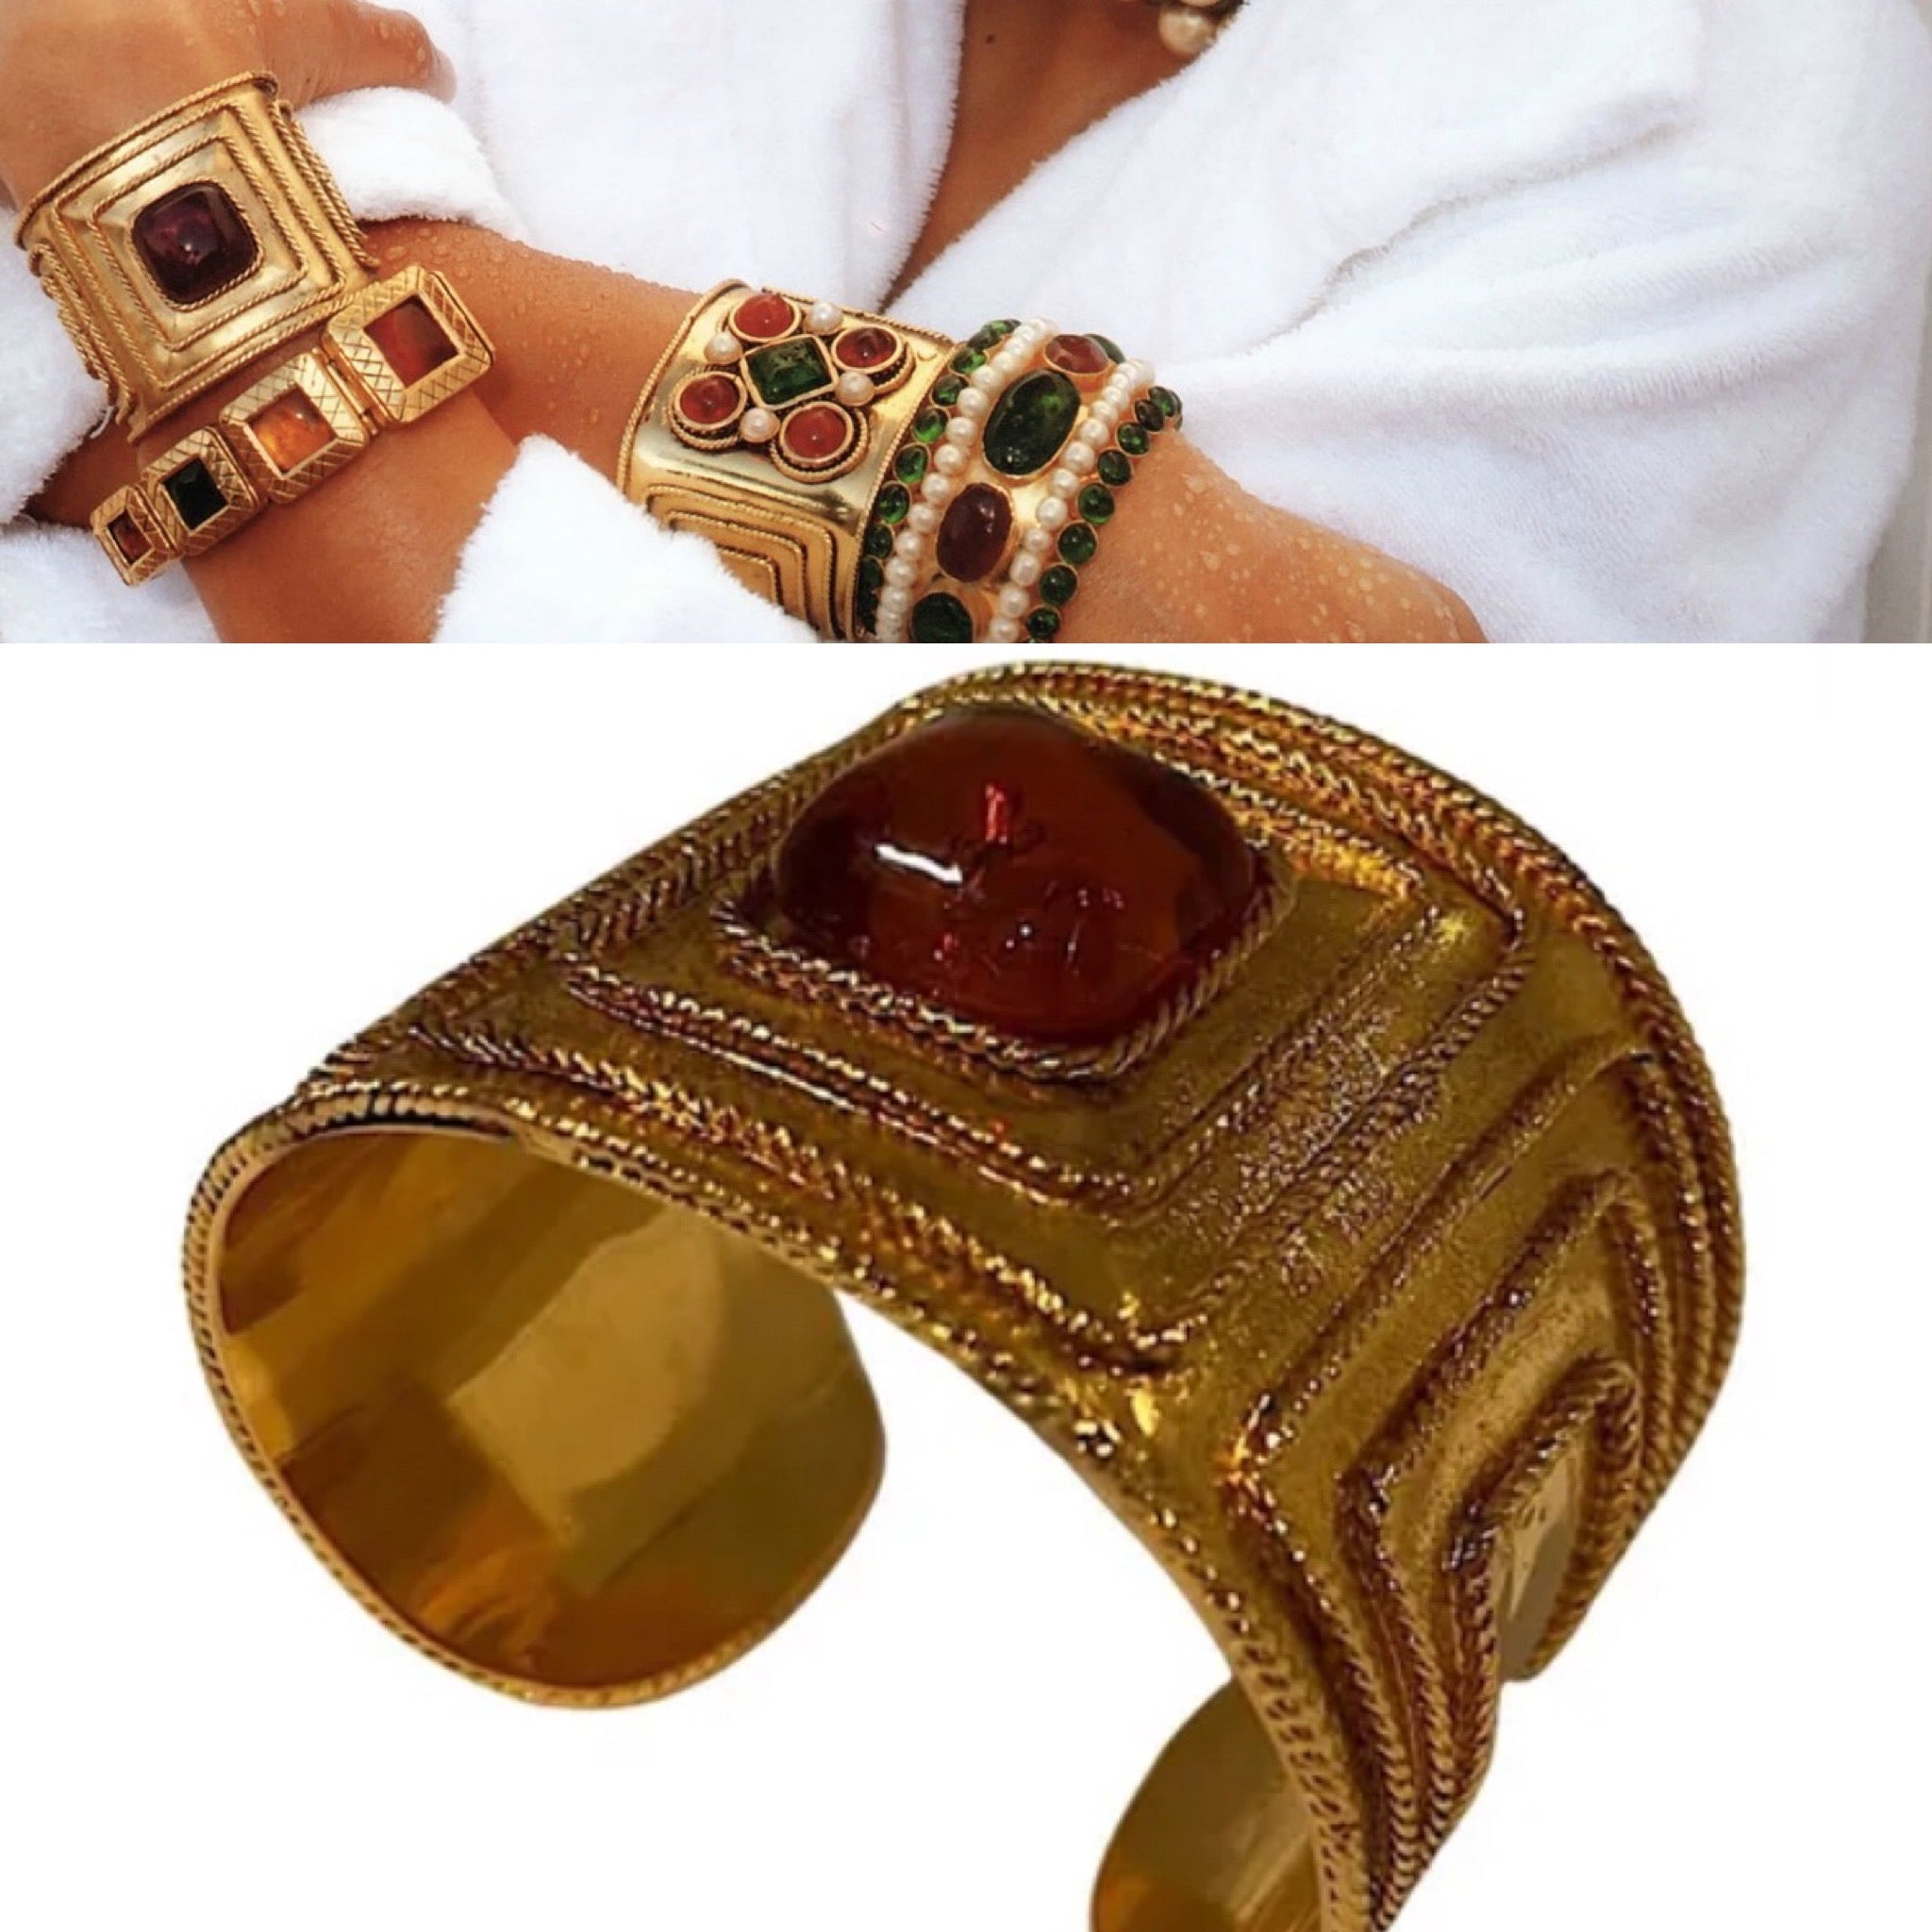 Authentic Chanel Vintage Cuff Bracelet